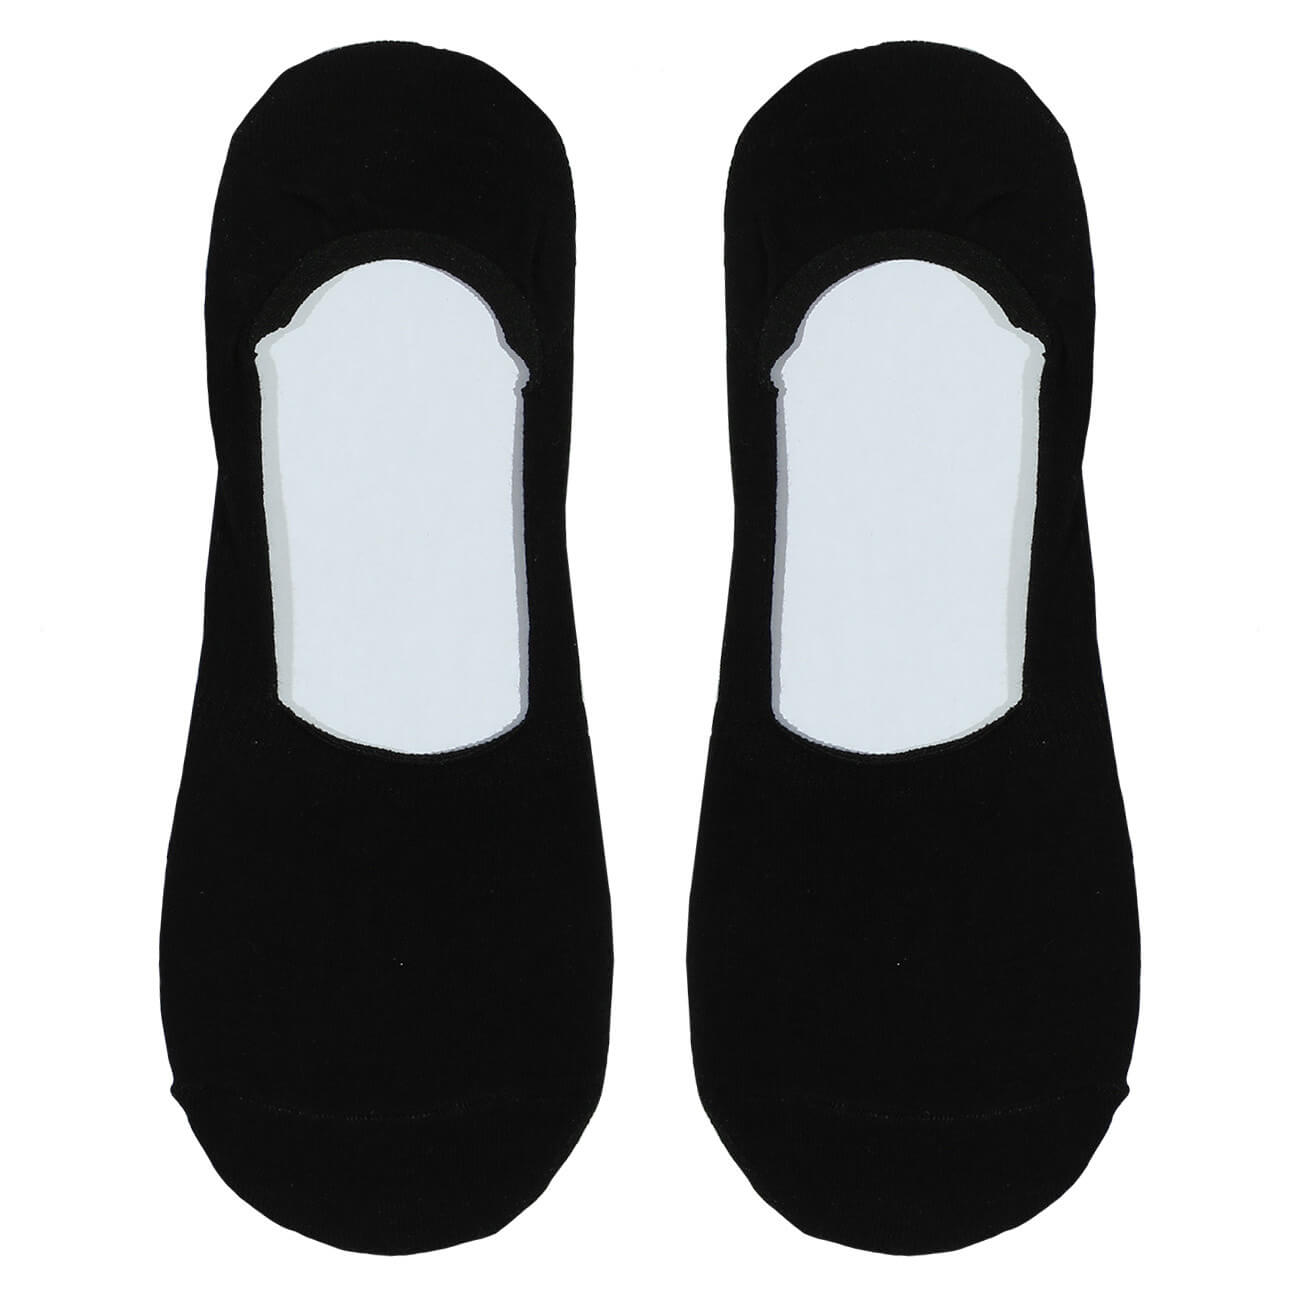 Носки-следки женские, р. 36-38, хлопок/полиэстер, черные, Basic носки следки женские р 38 41 хлопок полиэстер черные basic